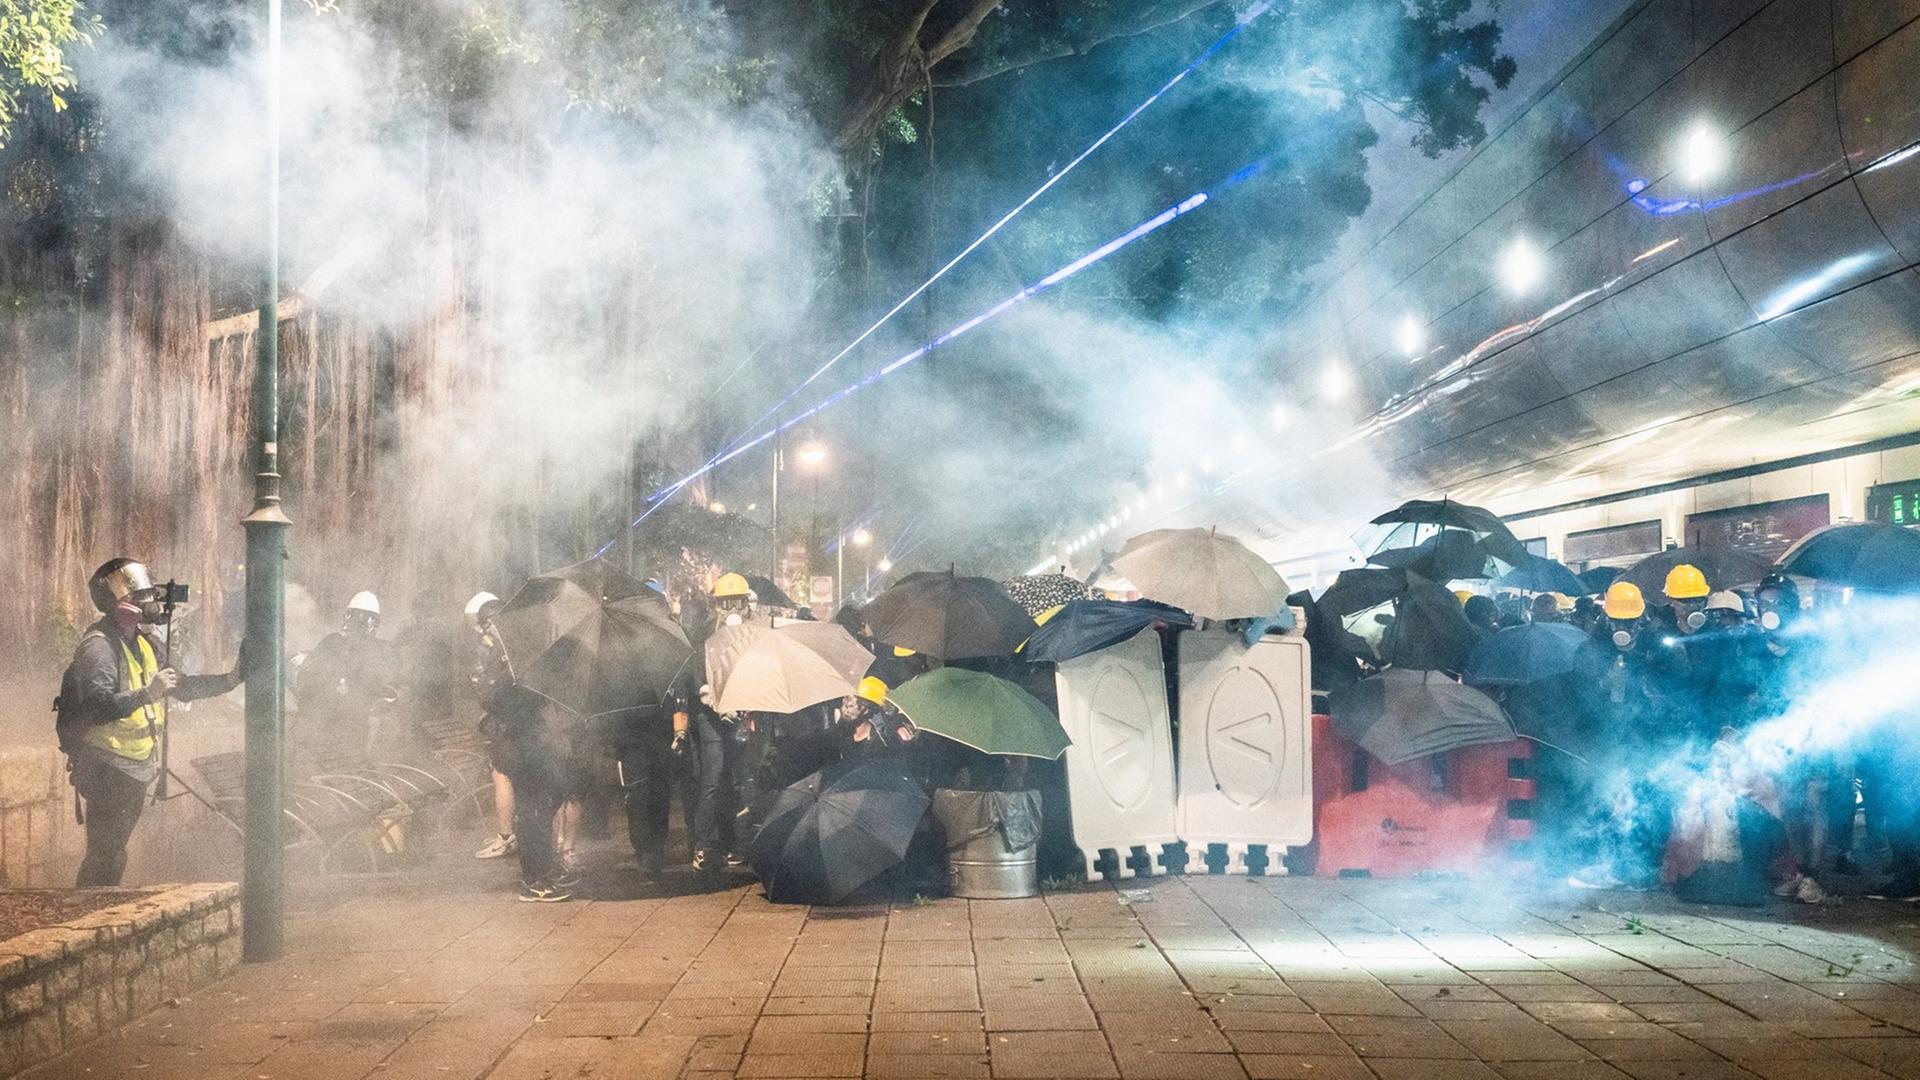 Demonstranten in Tsim Sha Tsui in Hongkong verstecken sich im Abendlicht hinter Regenschirmen und anderen Gegenständen vor dem sie umwabernden Tränengas.